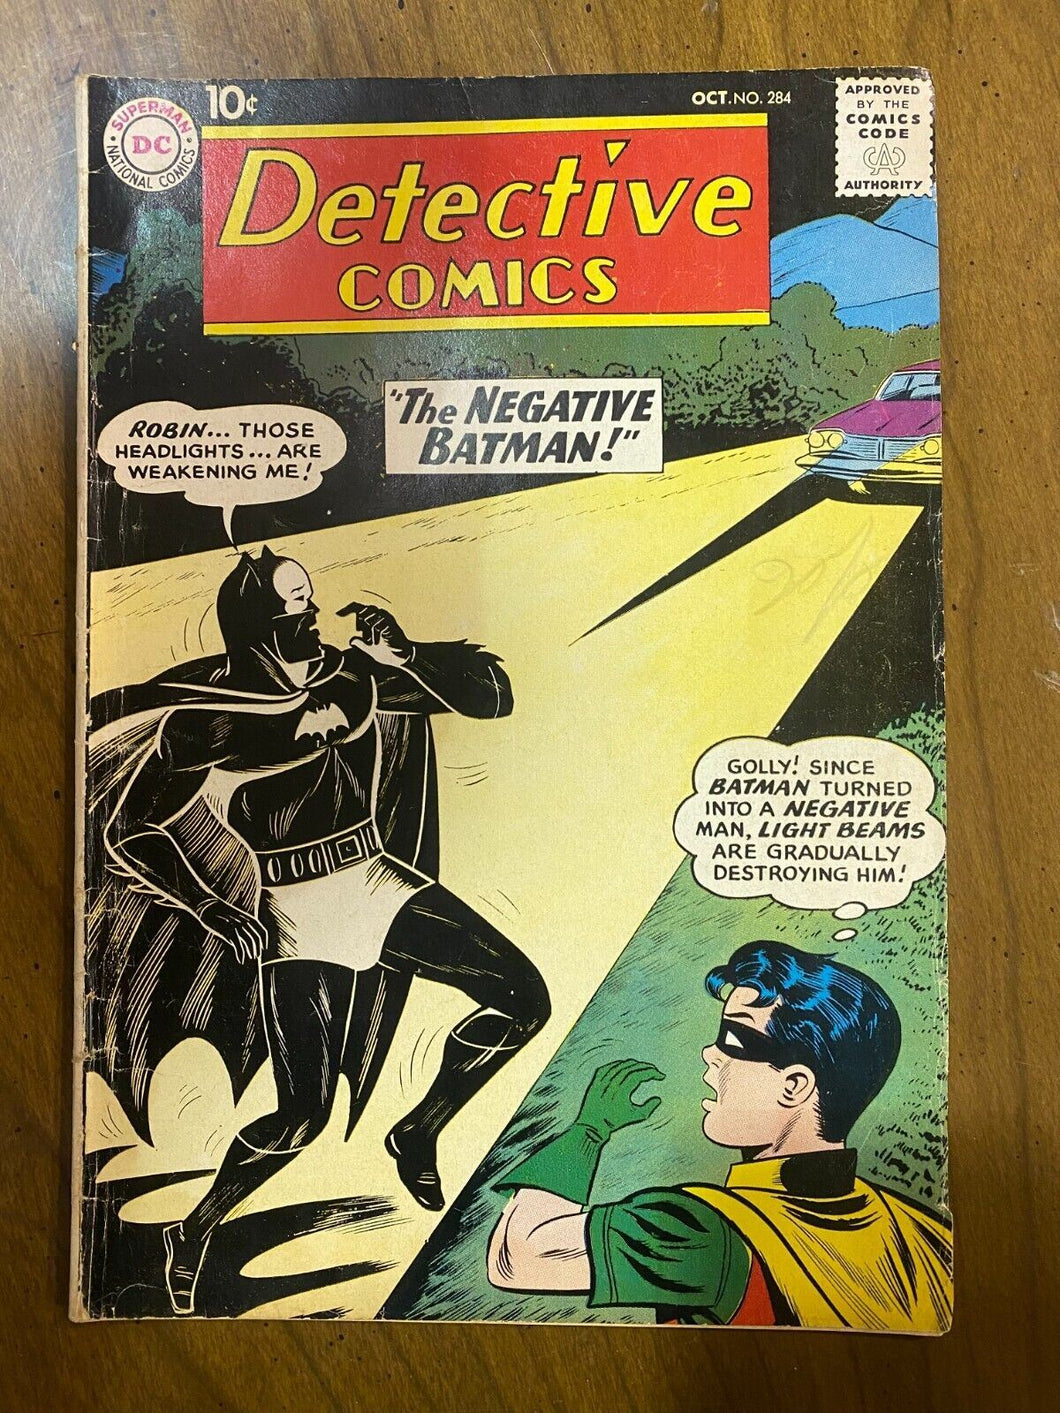 1960 Detective Comics Vol 1 Issue 284